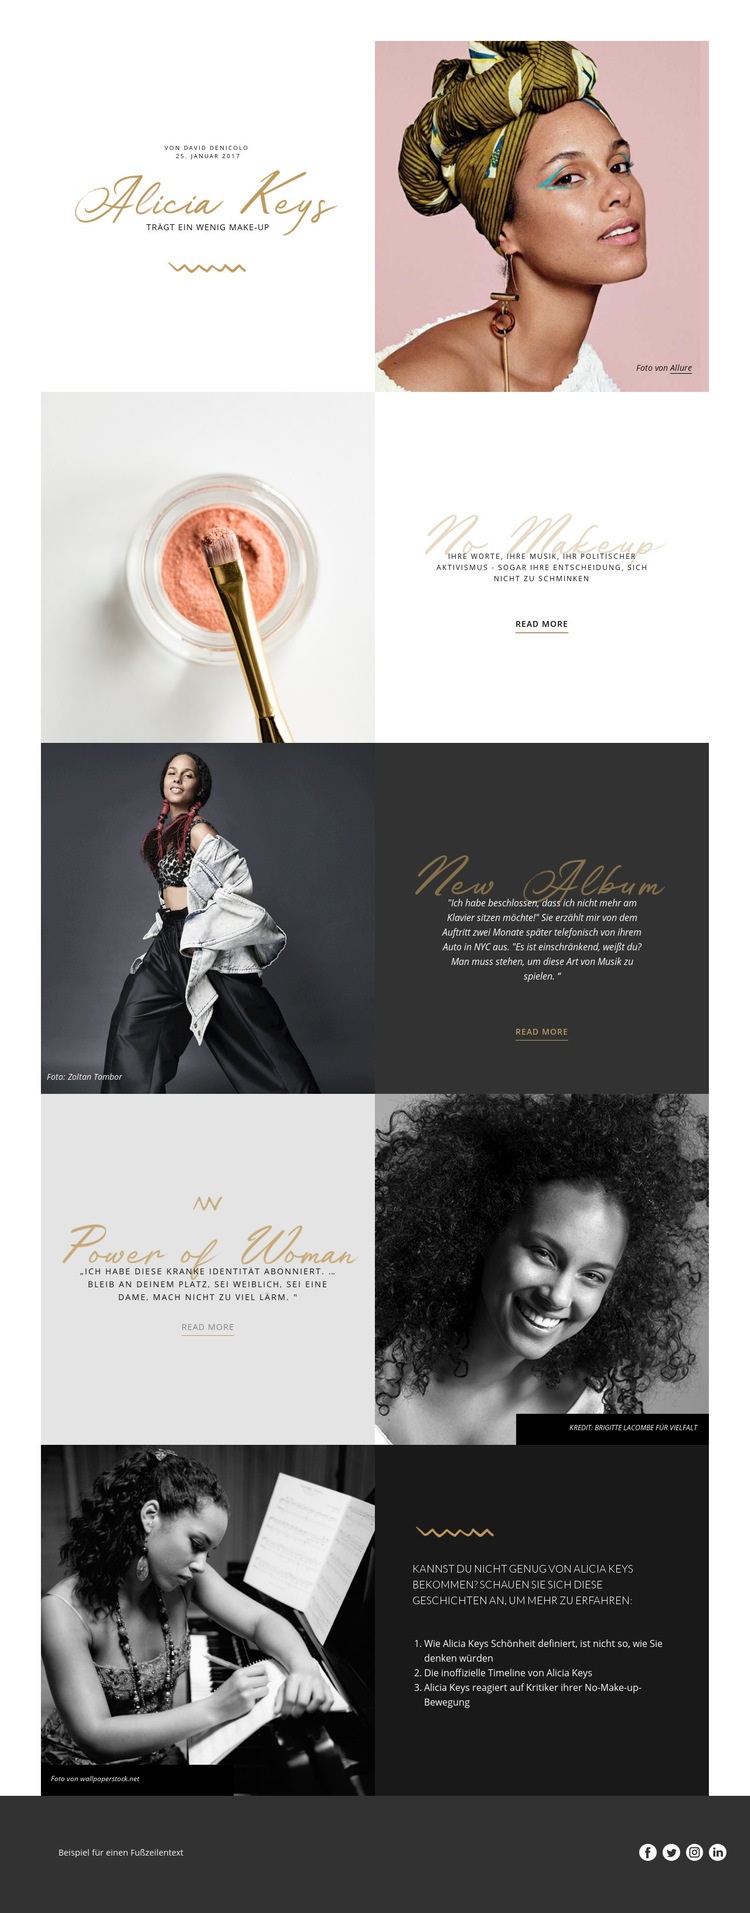 Alicia Keys Website design